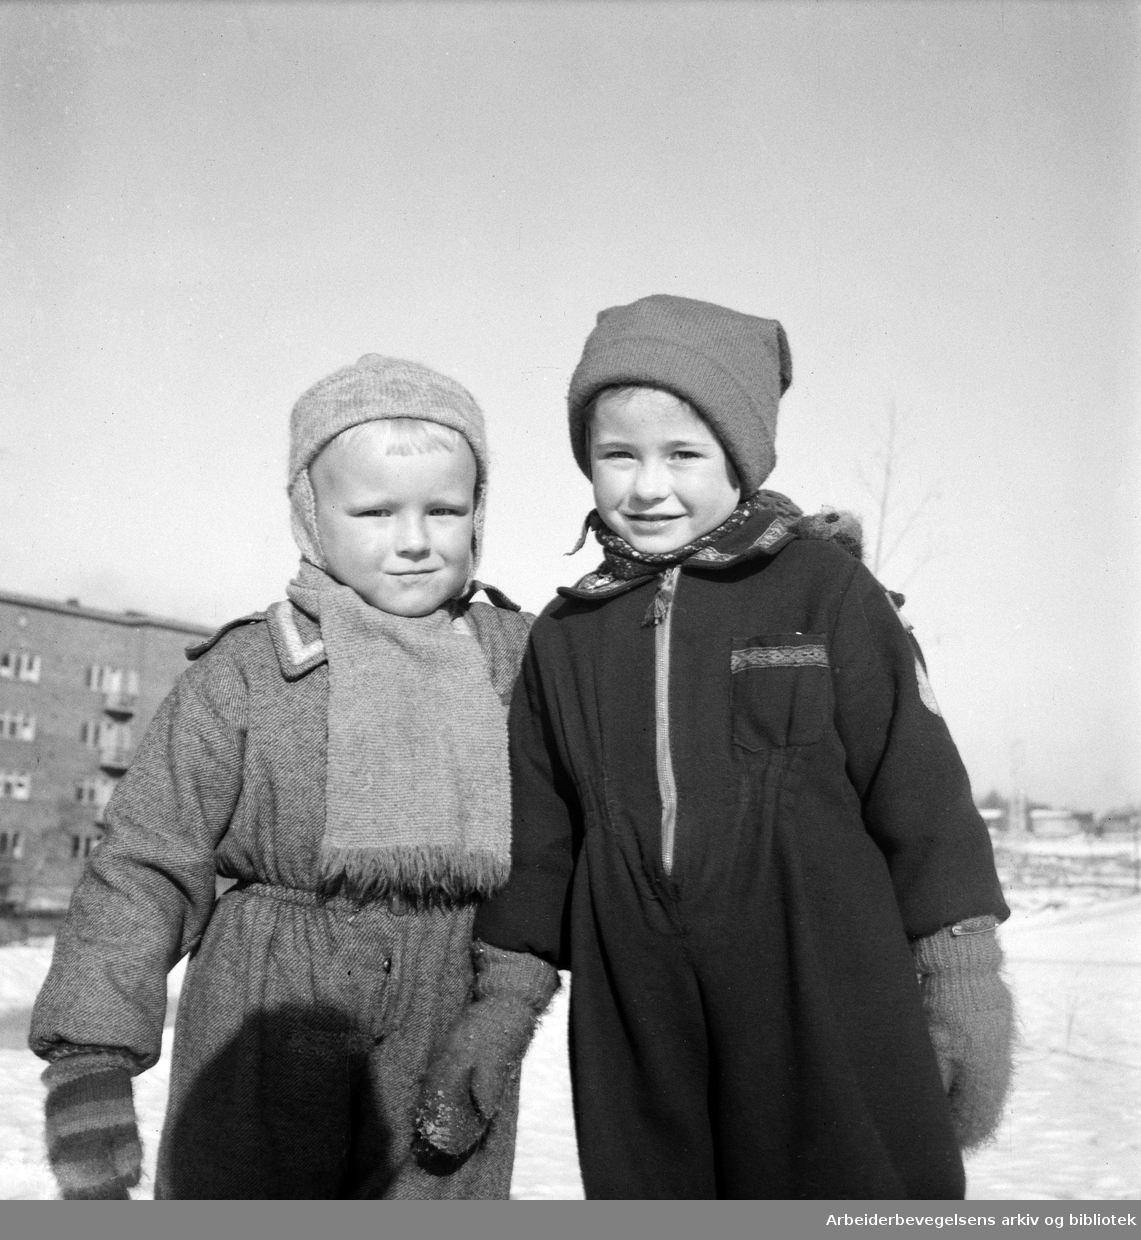 Framfylkingen. Oslo Framkrets' skiskole i Torshovdalen 13 til 17 januar 1950.